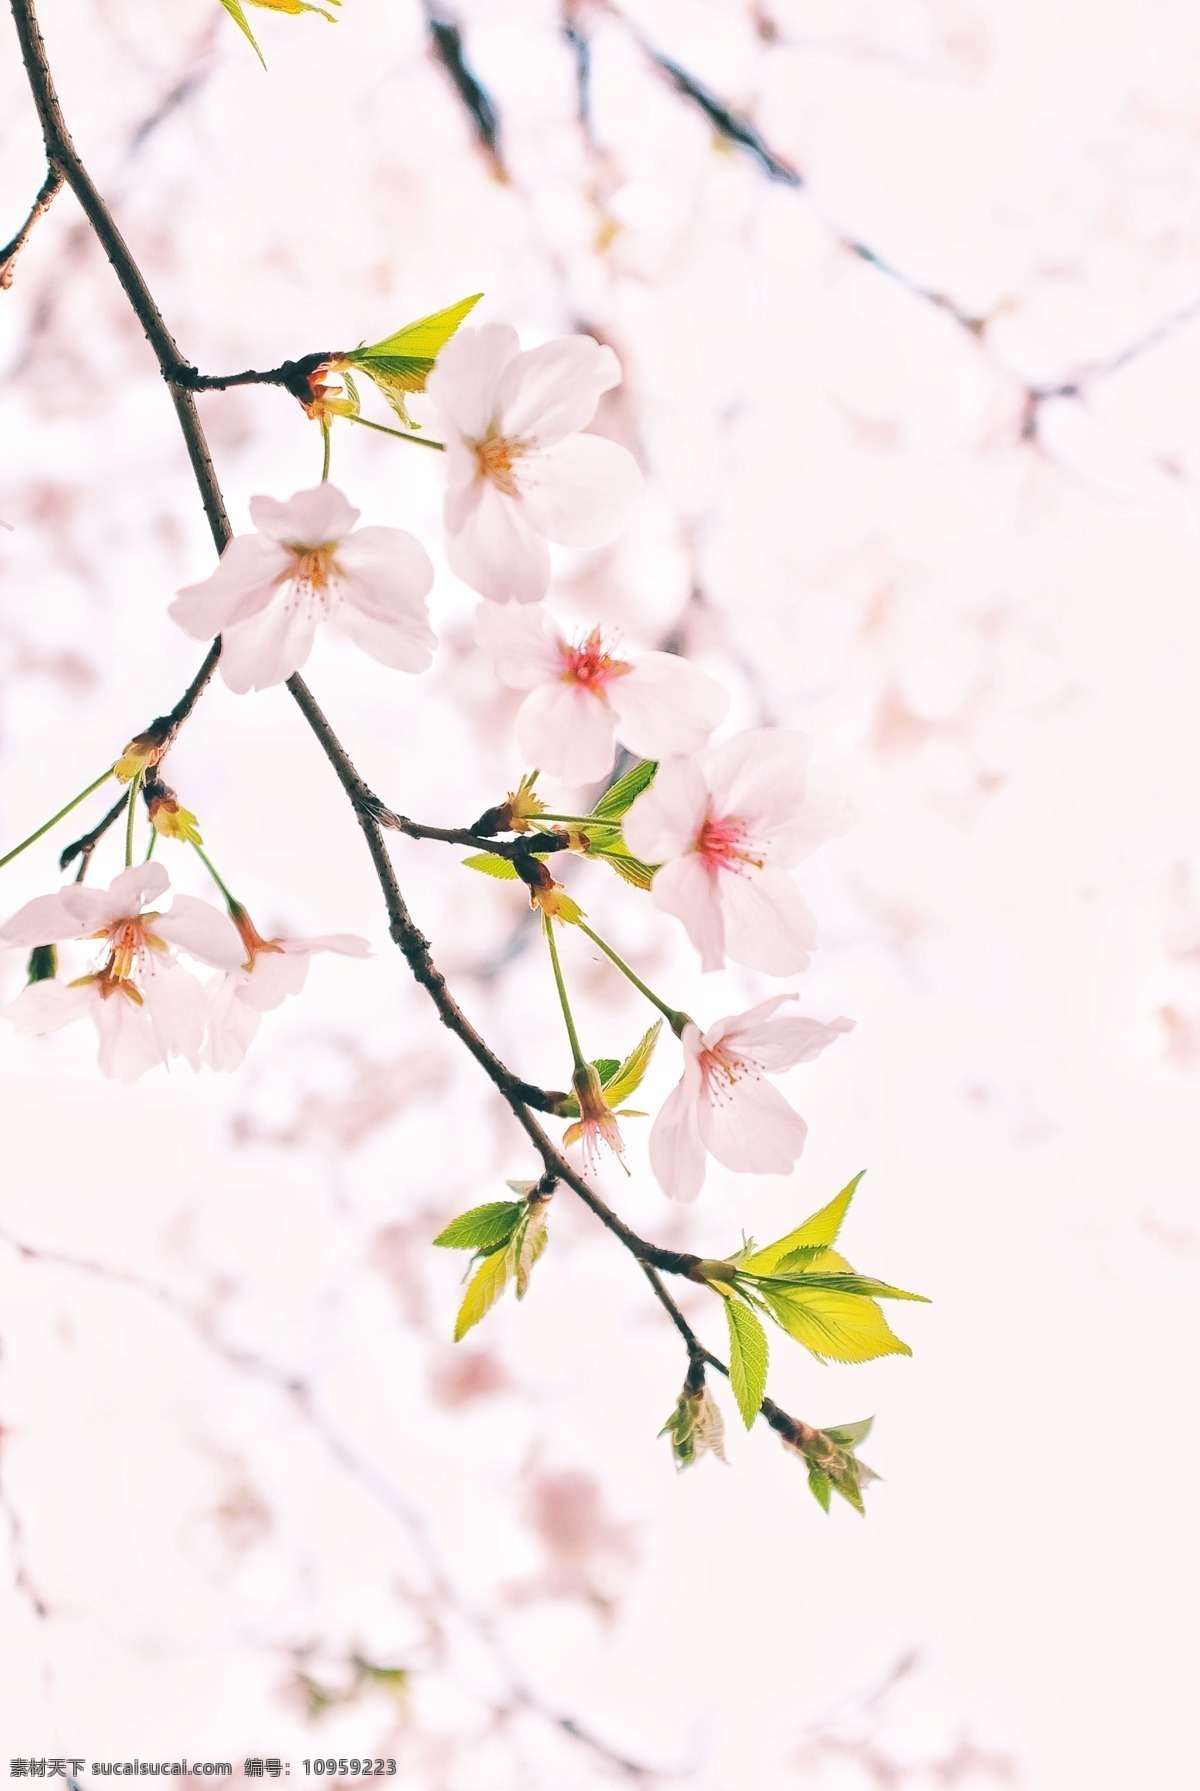 春天 粉嫩 粉色 粉红 樱花 唯美 清新 春 生物世界 花草